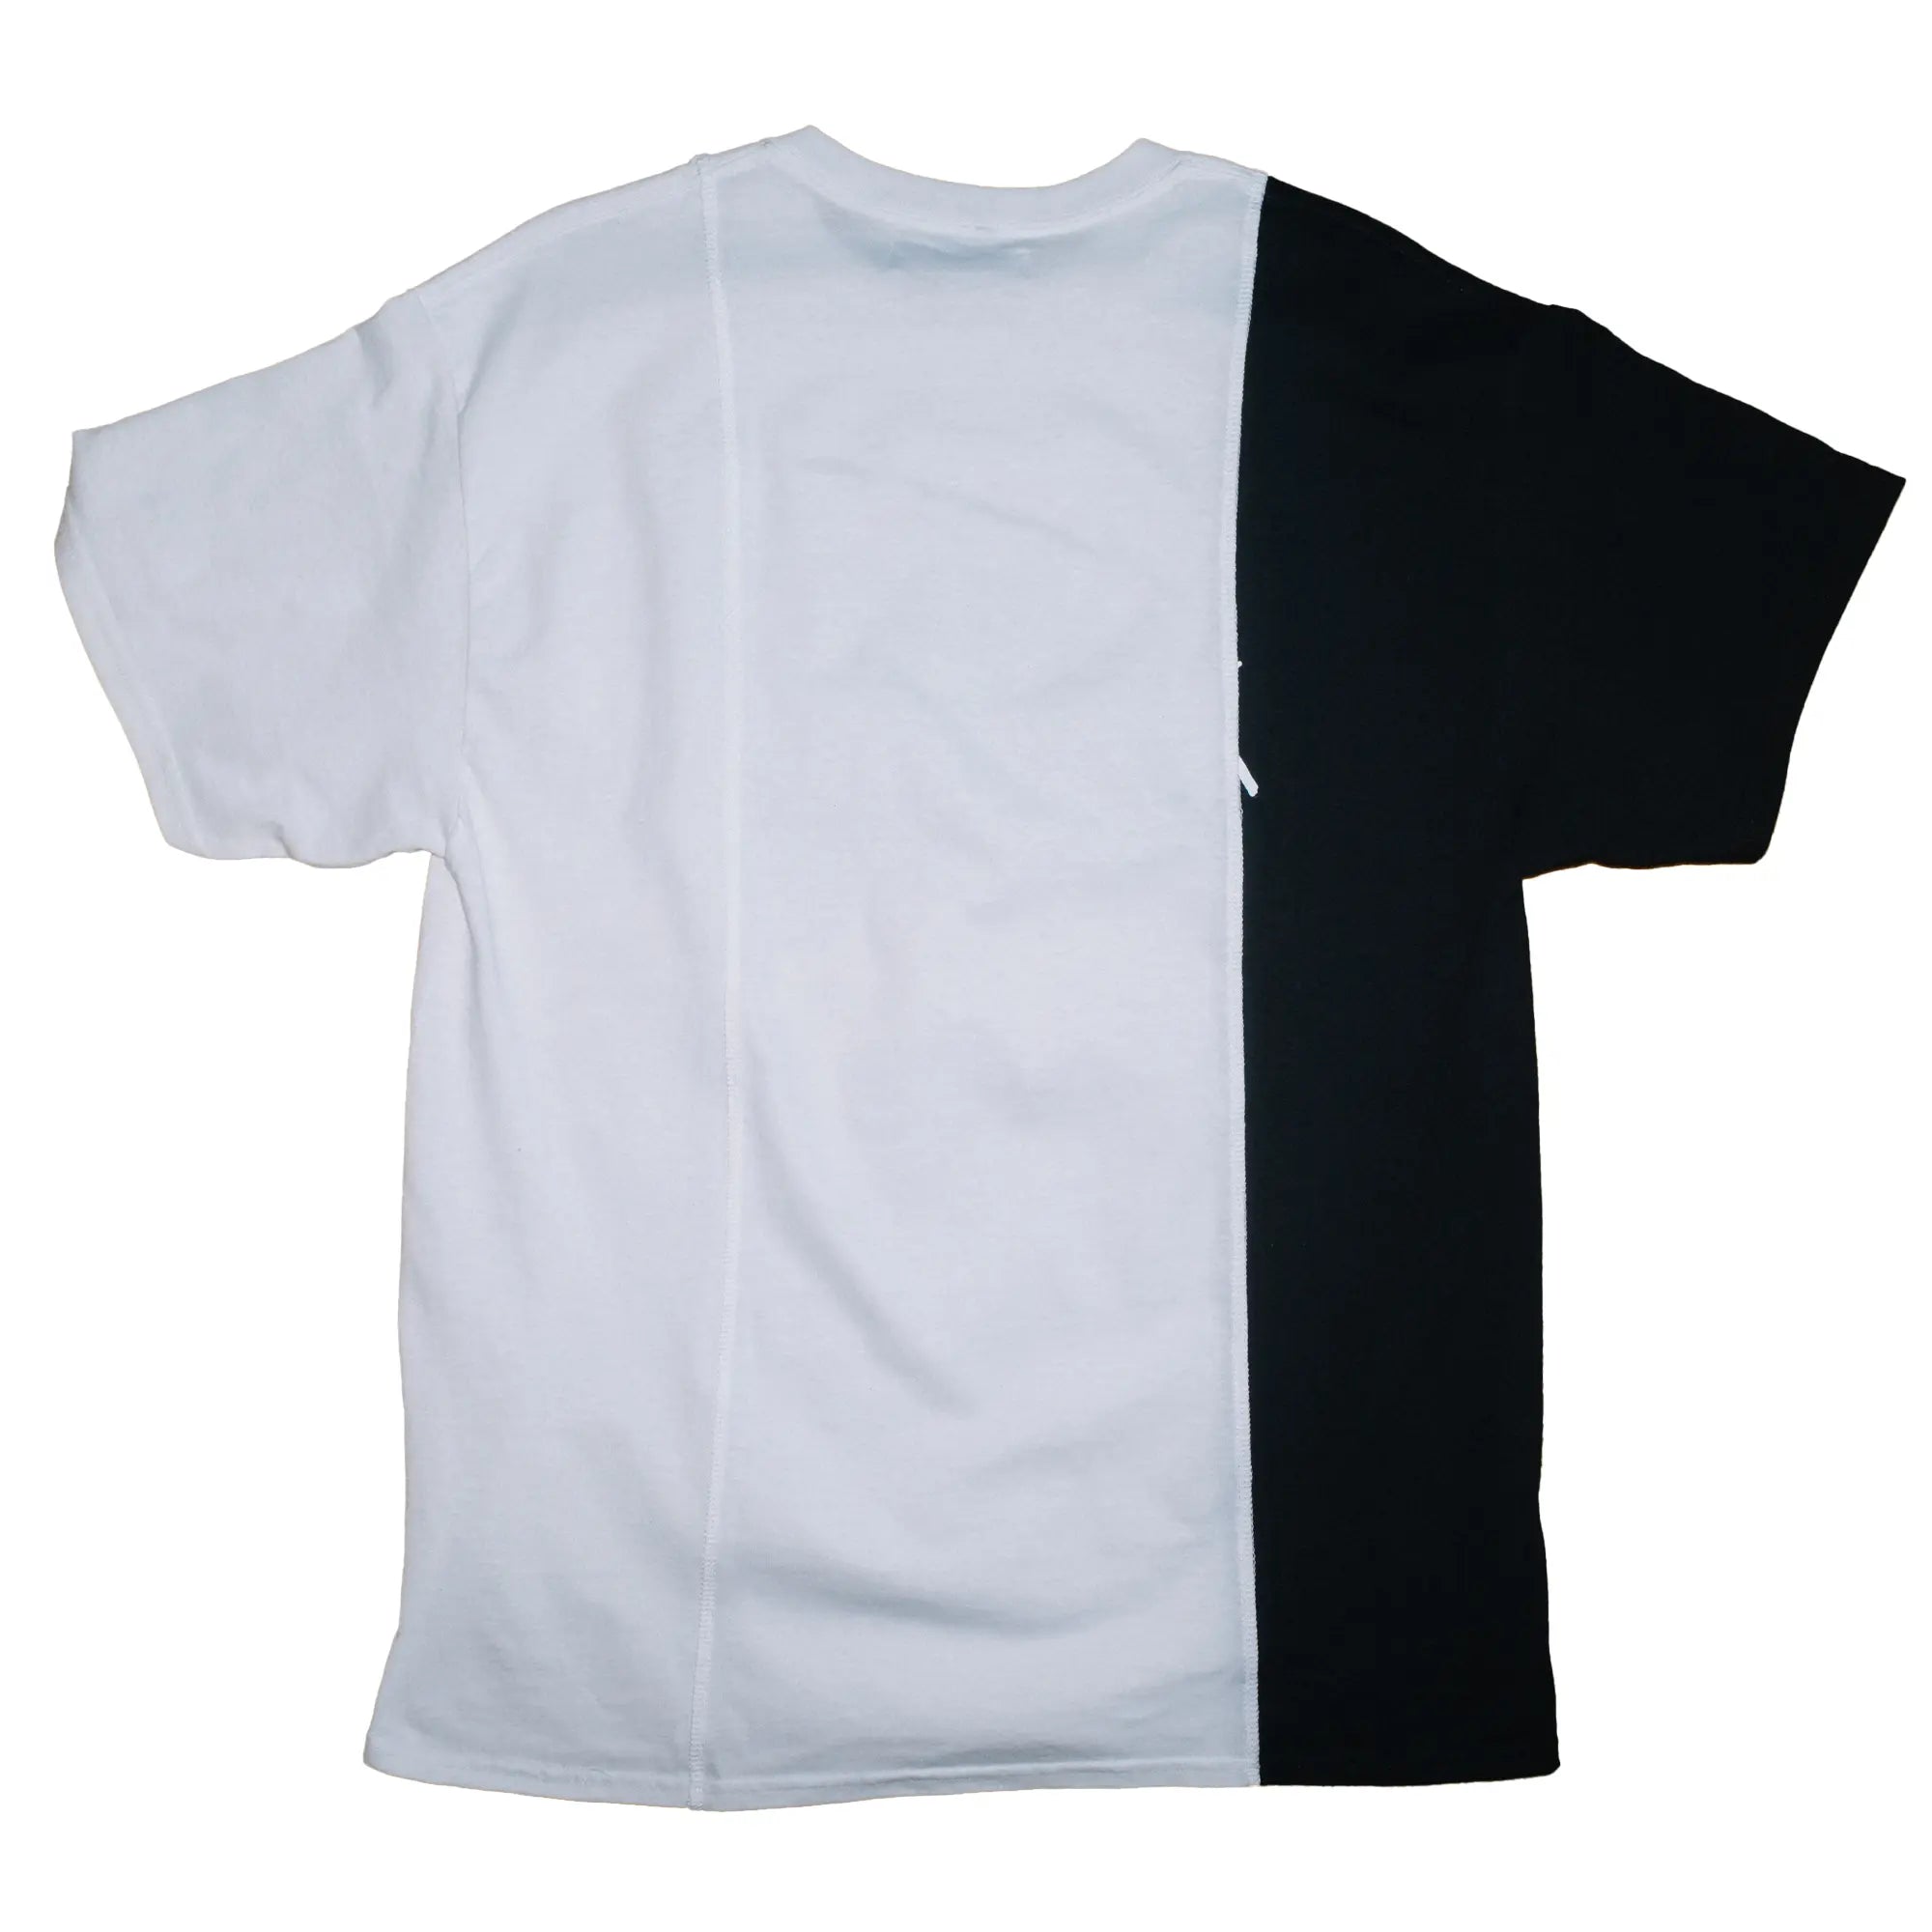 CUT-UP T-shirt no. 2316 - XL